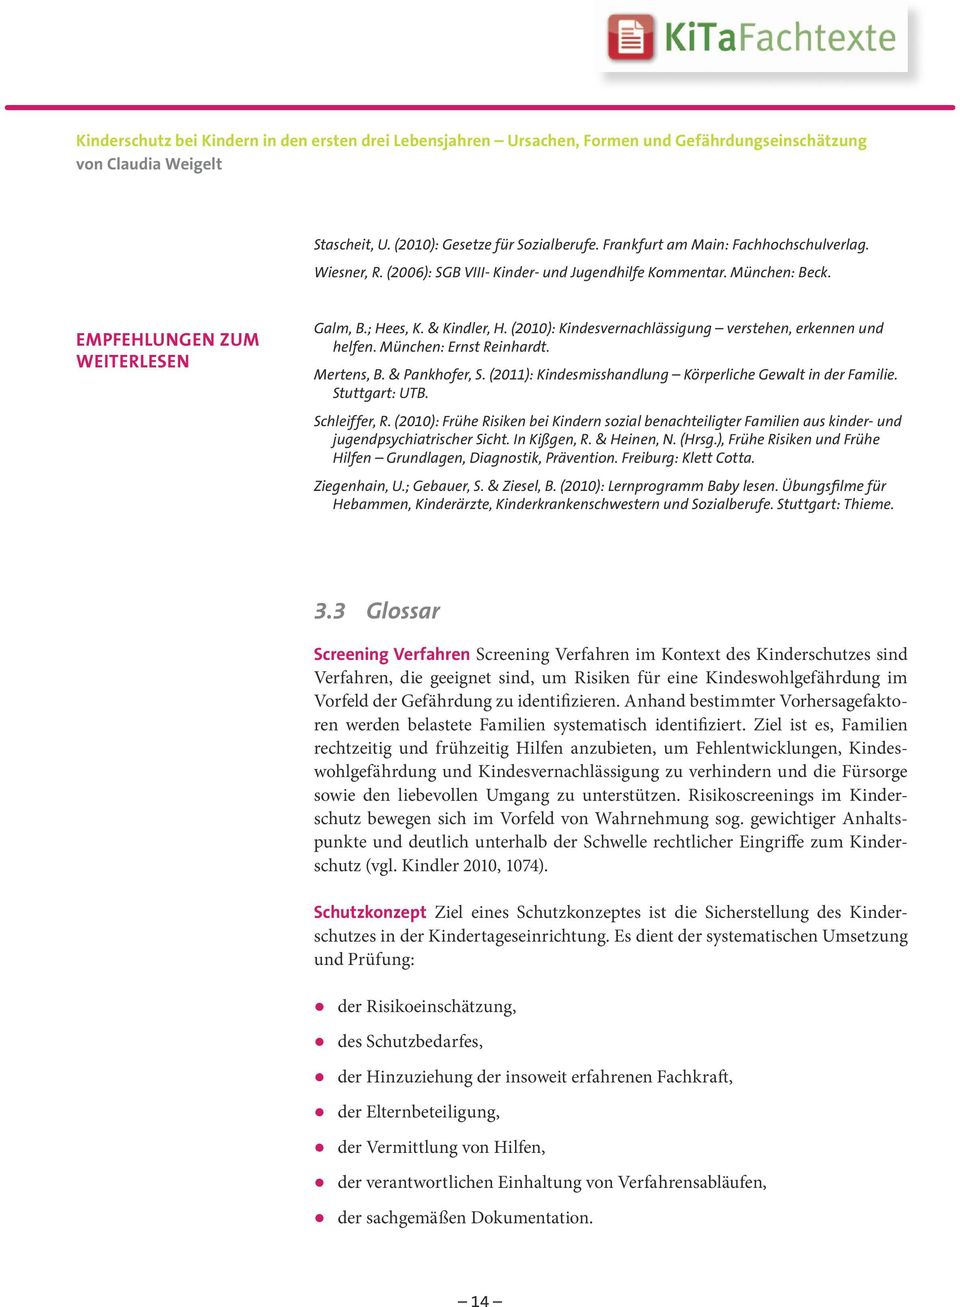 (2011): Kindesmisshandlung Körperliche Gewalt in der Familie. Stuttgart: UTB. Schleiffer, R.